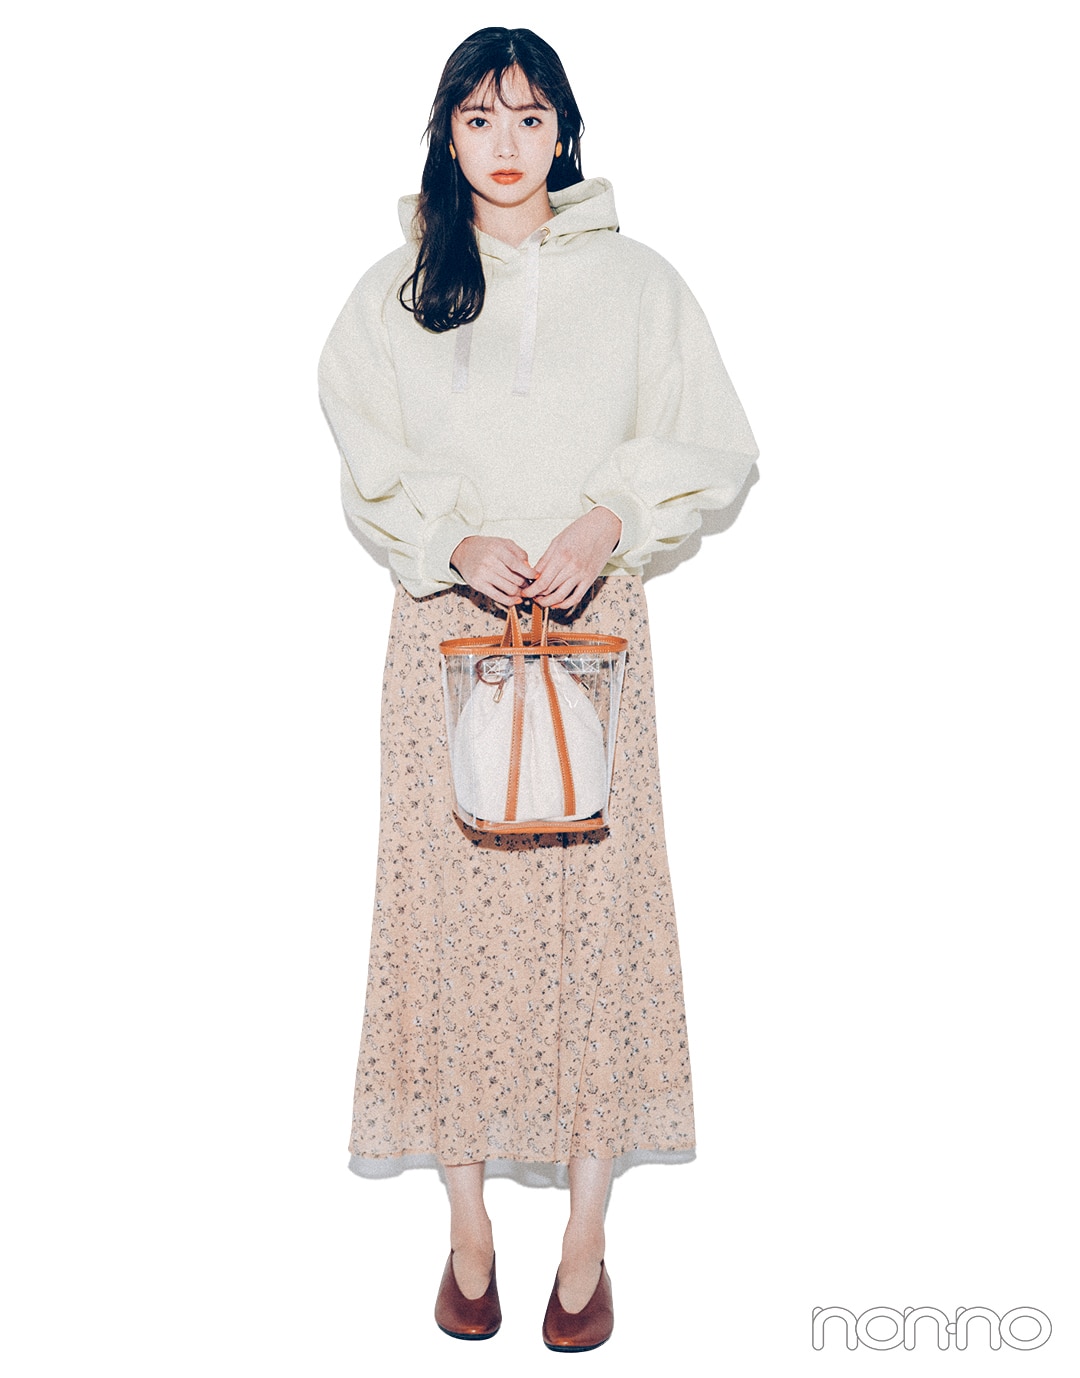 新川優愛が着る2021年春の“着たいものファースト”なコーデレッスンクロップト丈フーディ３